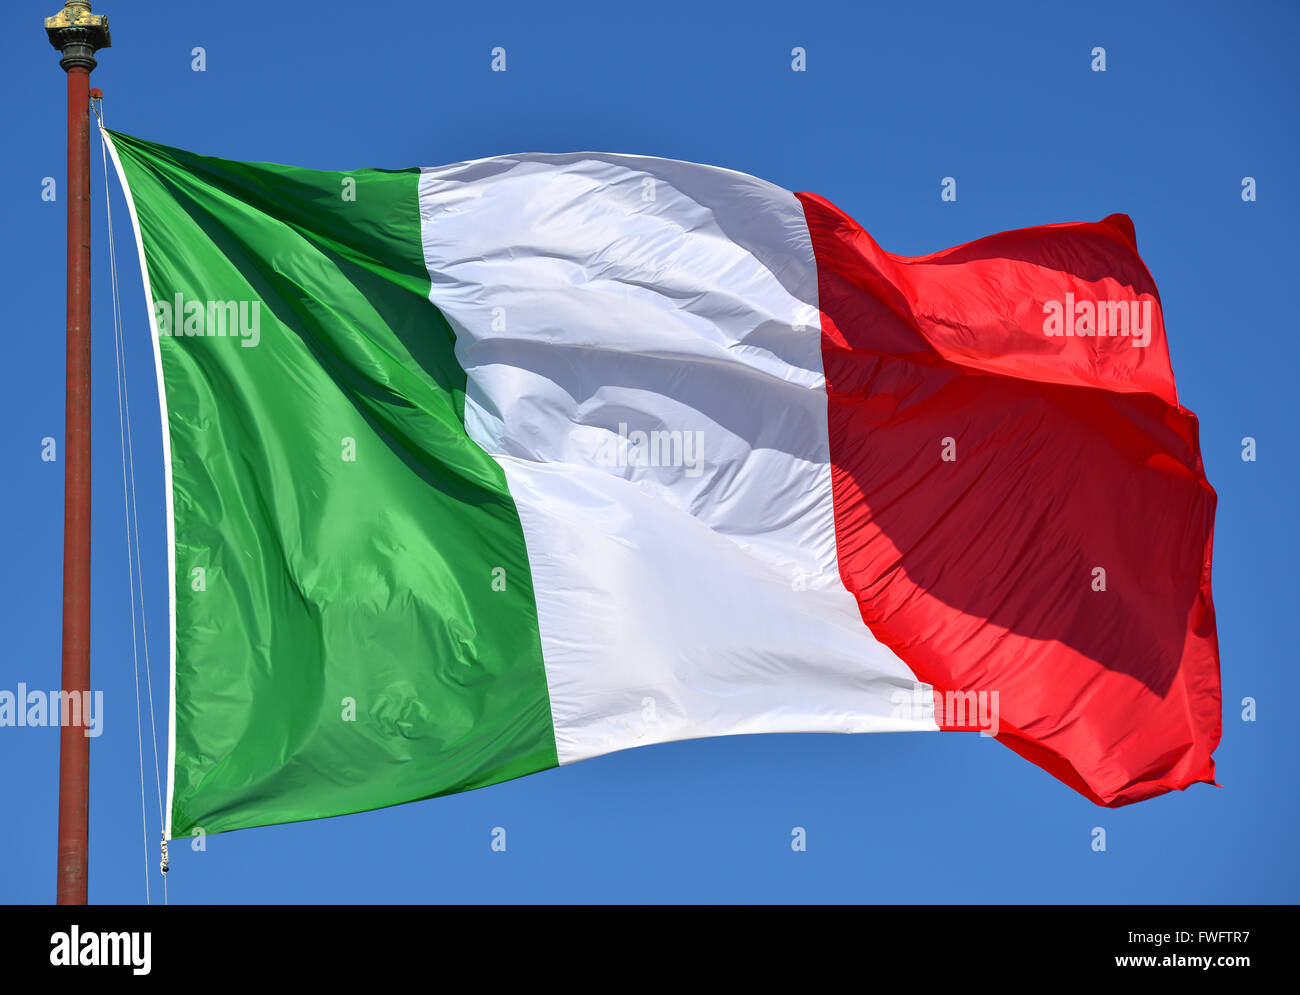 Bandera italiana revoloteaban en el viento, con el cielo azul. Verde, blanco, rojo y azul son los colores nacionales italianas. Foto de stock